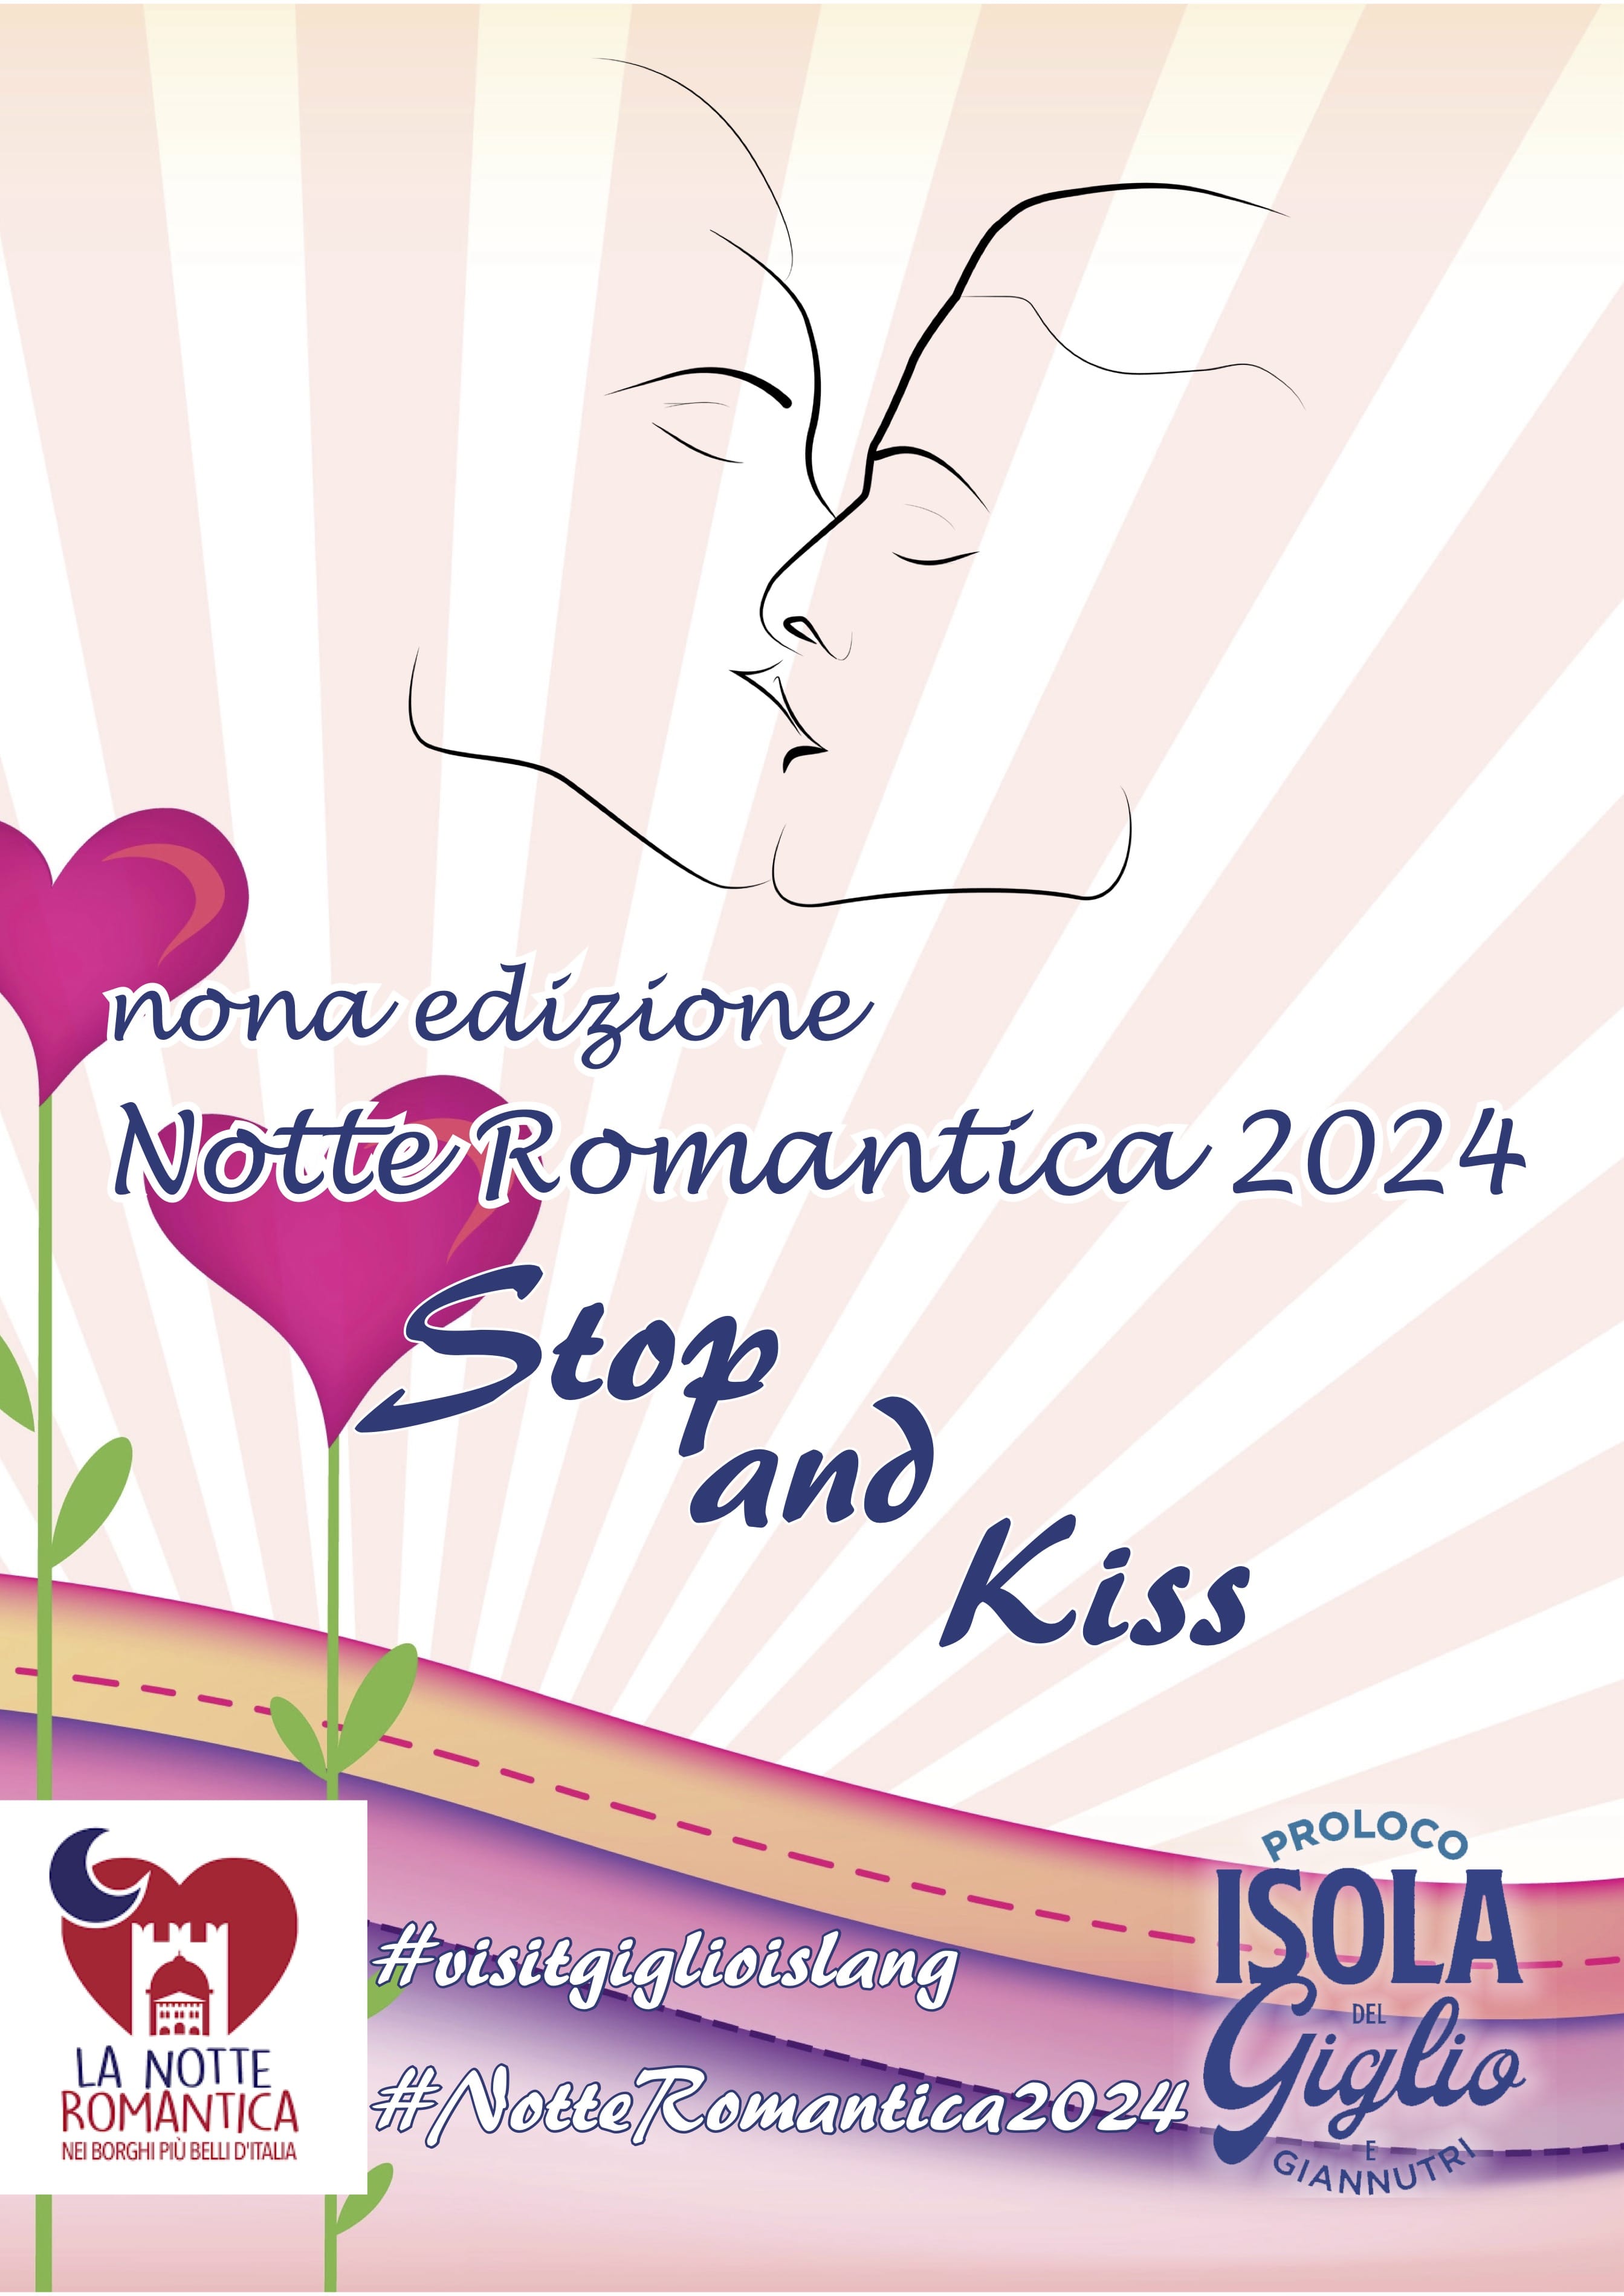 Evento Isola del Giglio 22 Giugno - La notte Romantica al Giglio Castello - Stop and Kiss